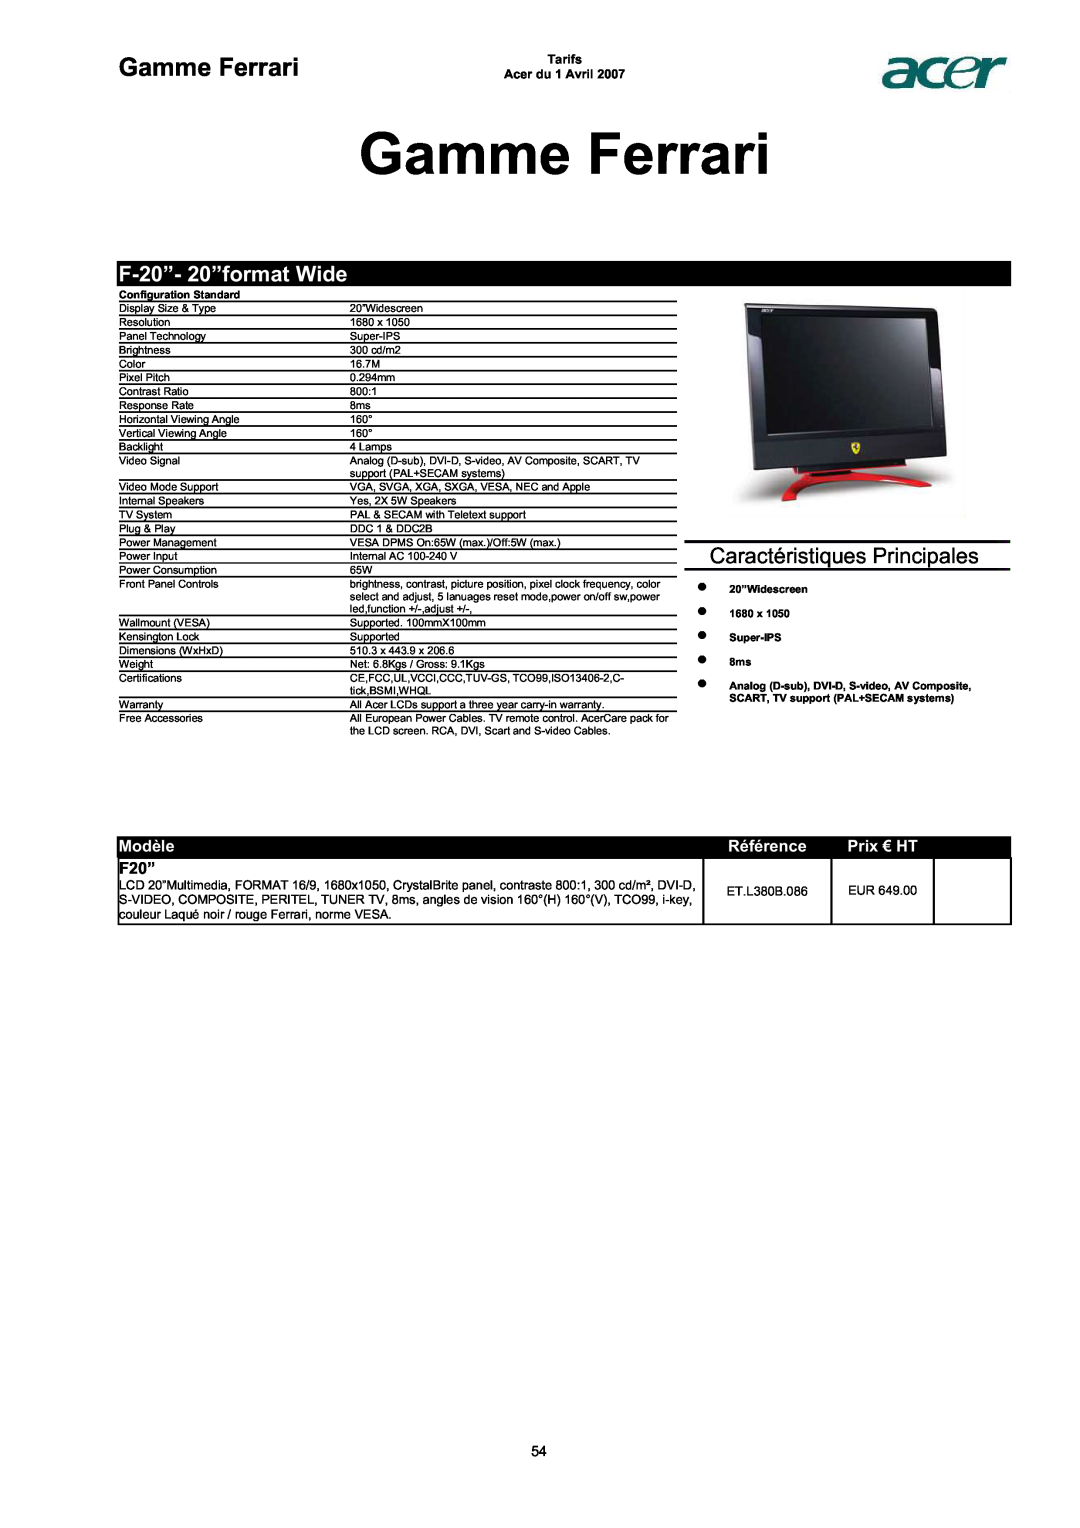 Acer AC713B-17 Gamme Ferrari, F-20”- 20”format Wide, F20”, Caractéristiques Principales, Modèle, Référence, Prix € HT 